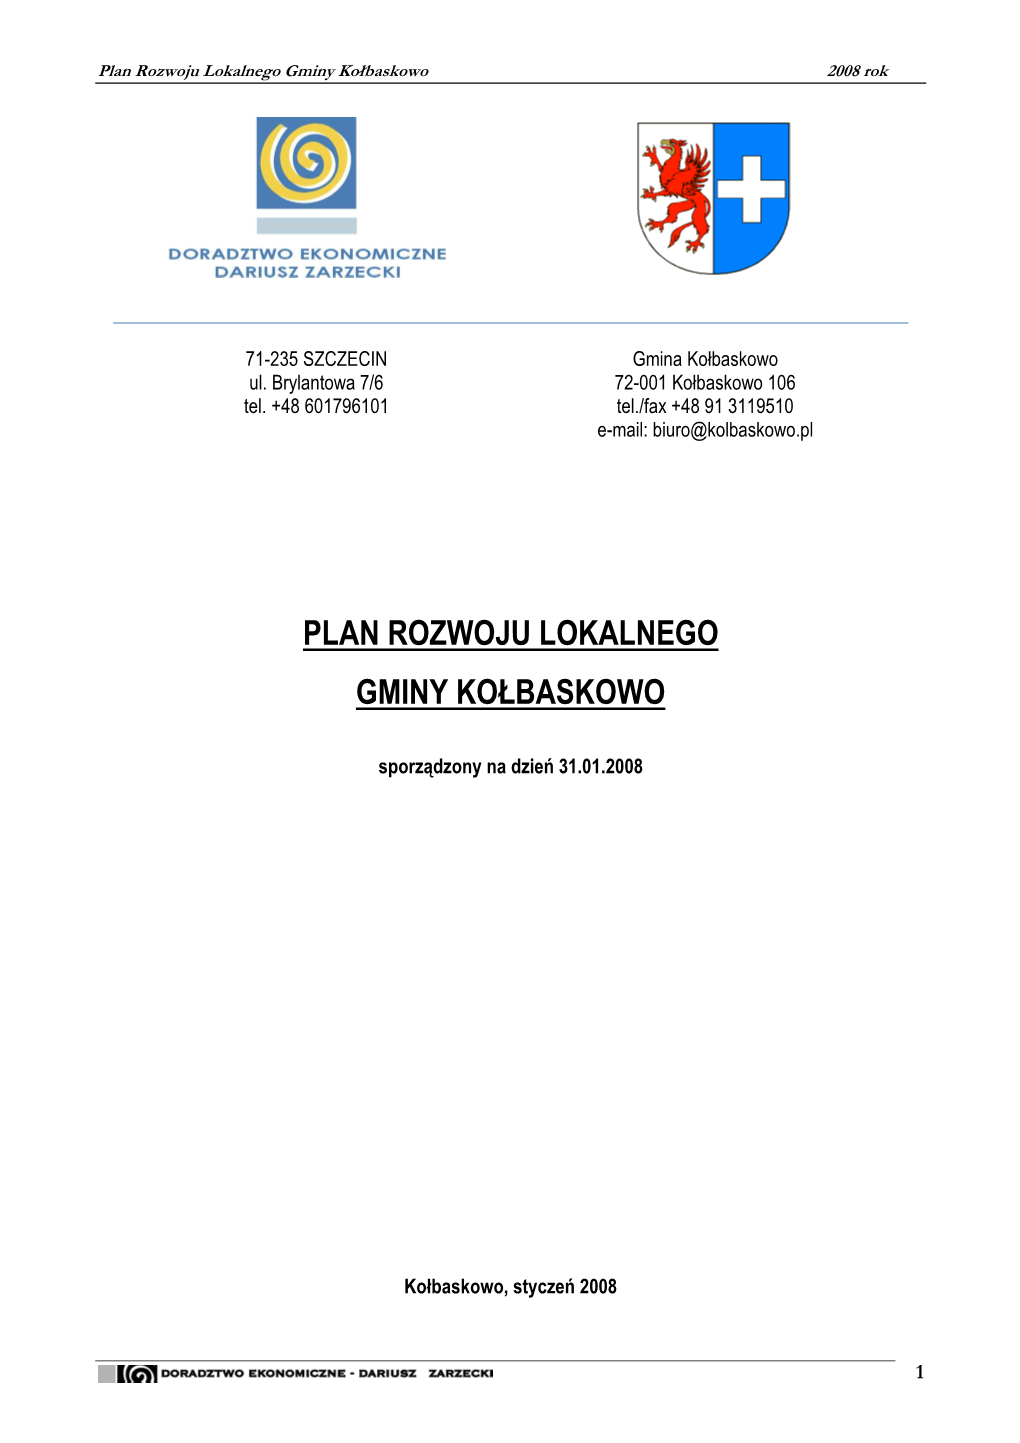 Plan Rozwoju Lokalnego Gminy Kołbaskowo 2008 Rok